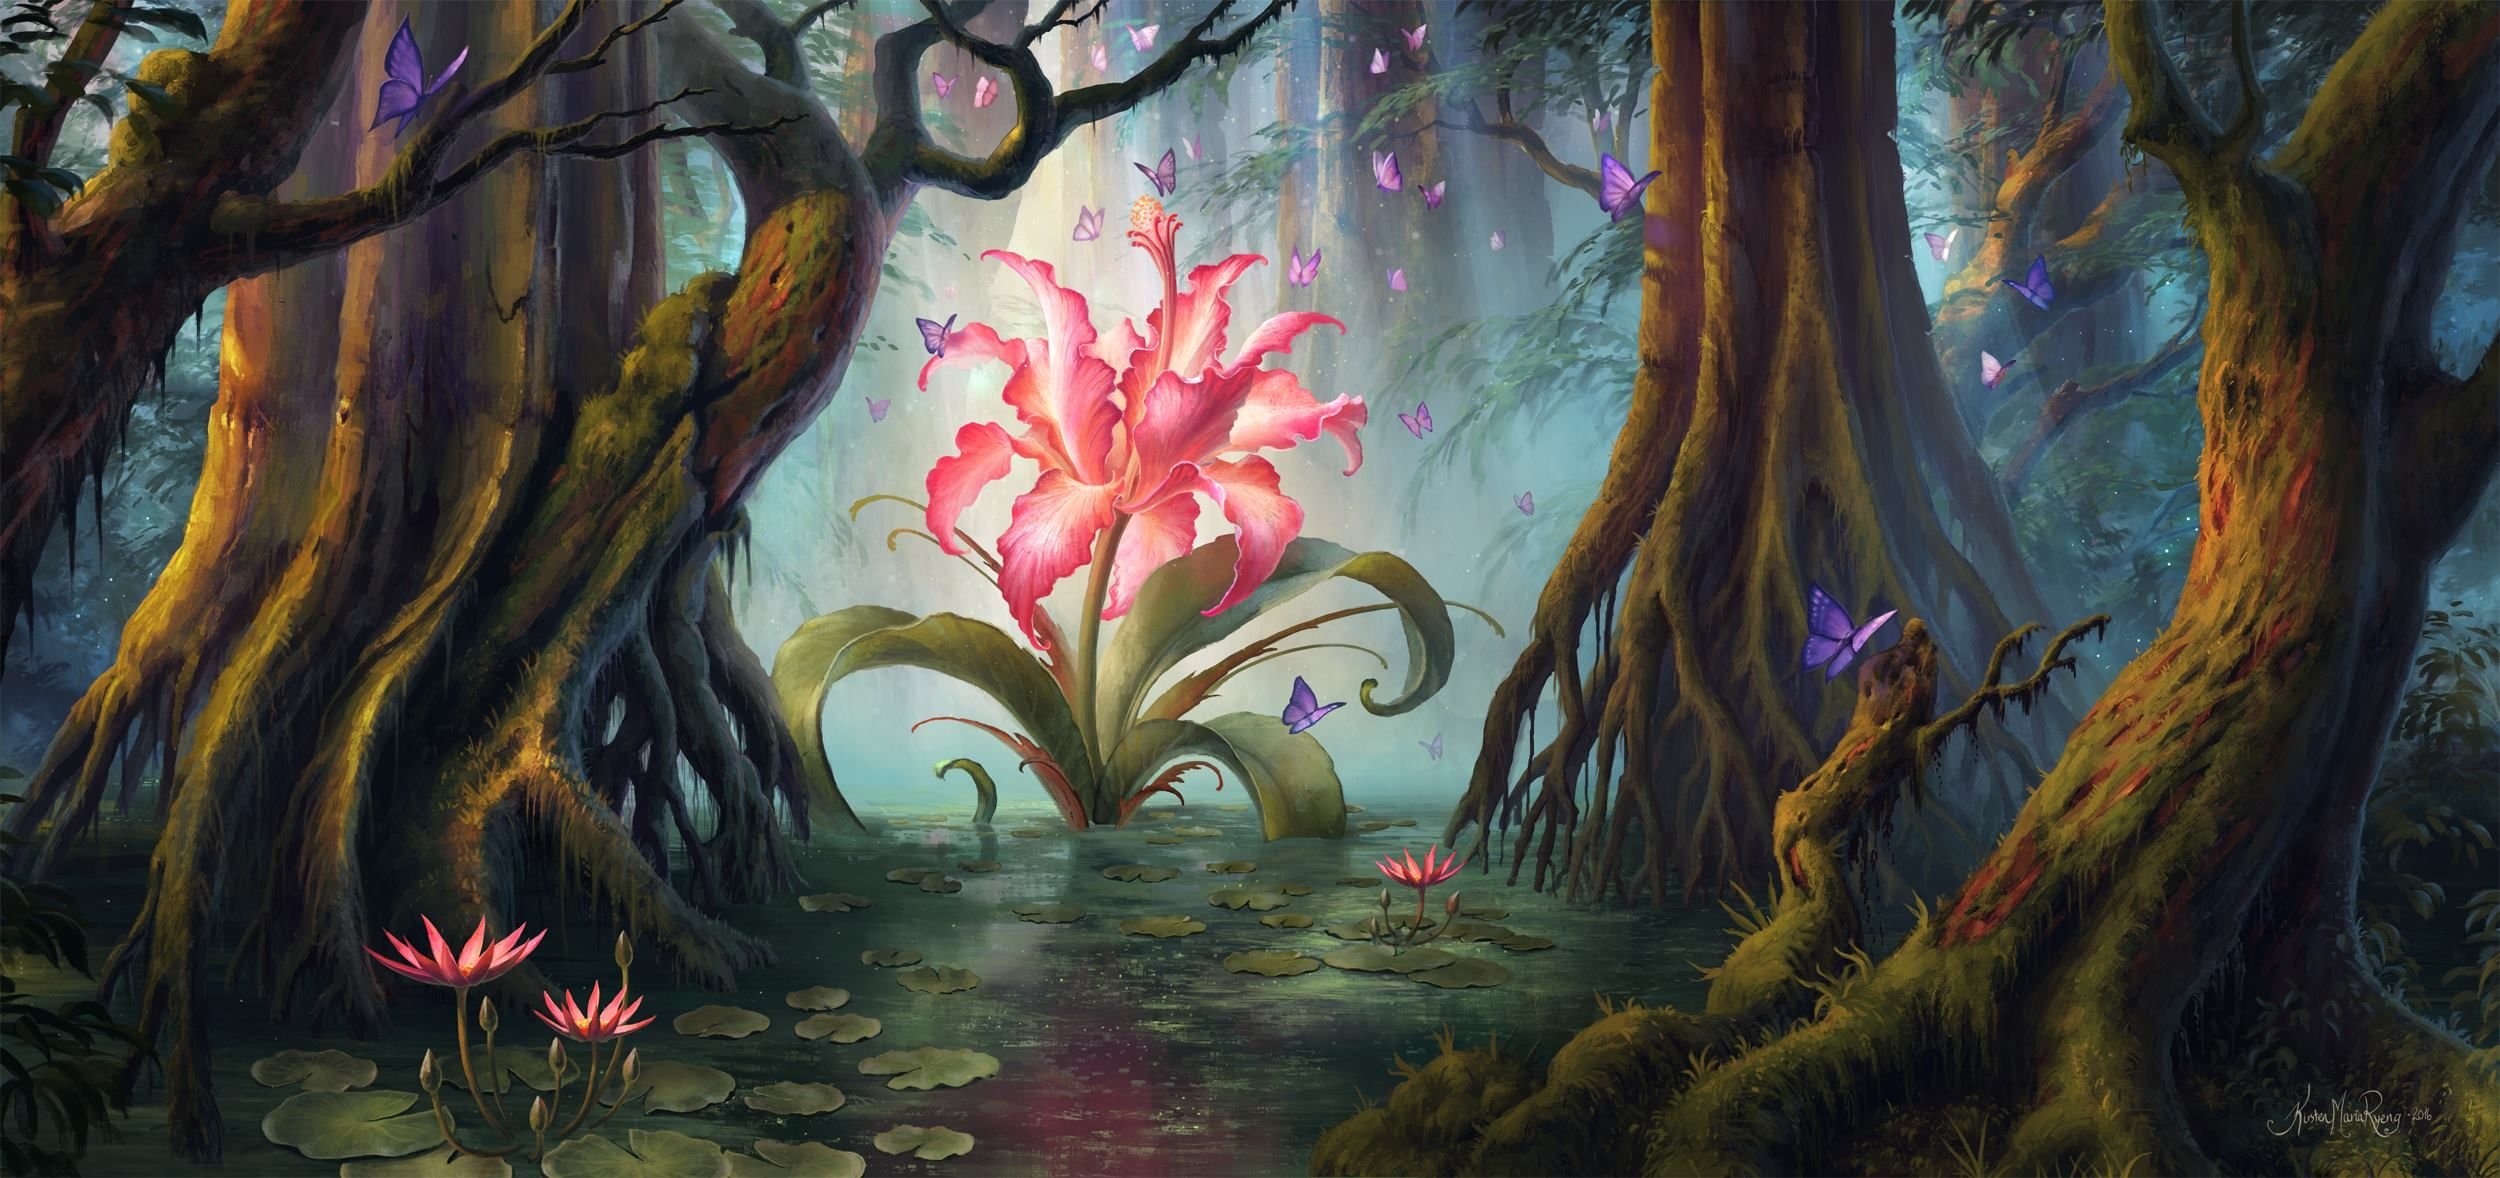 Заколдованные картинки. Аленький цветочек заколдованный лес. «Зачарованный лес» («Enchanted Forest»). Аленький цветочек в лесу. Сказочное дерево.